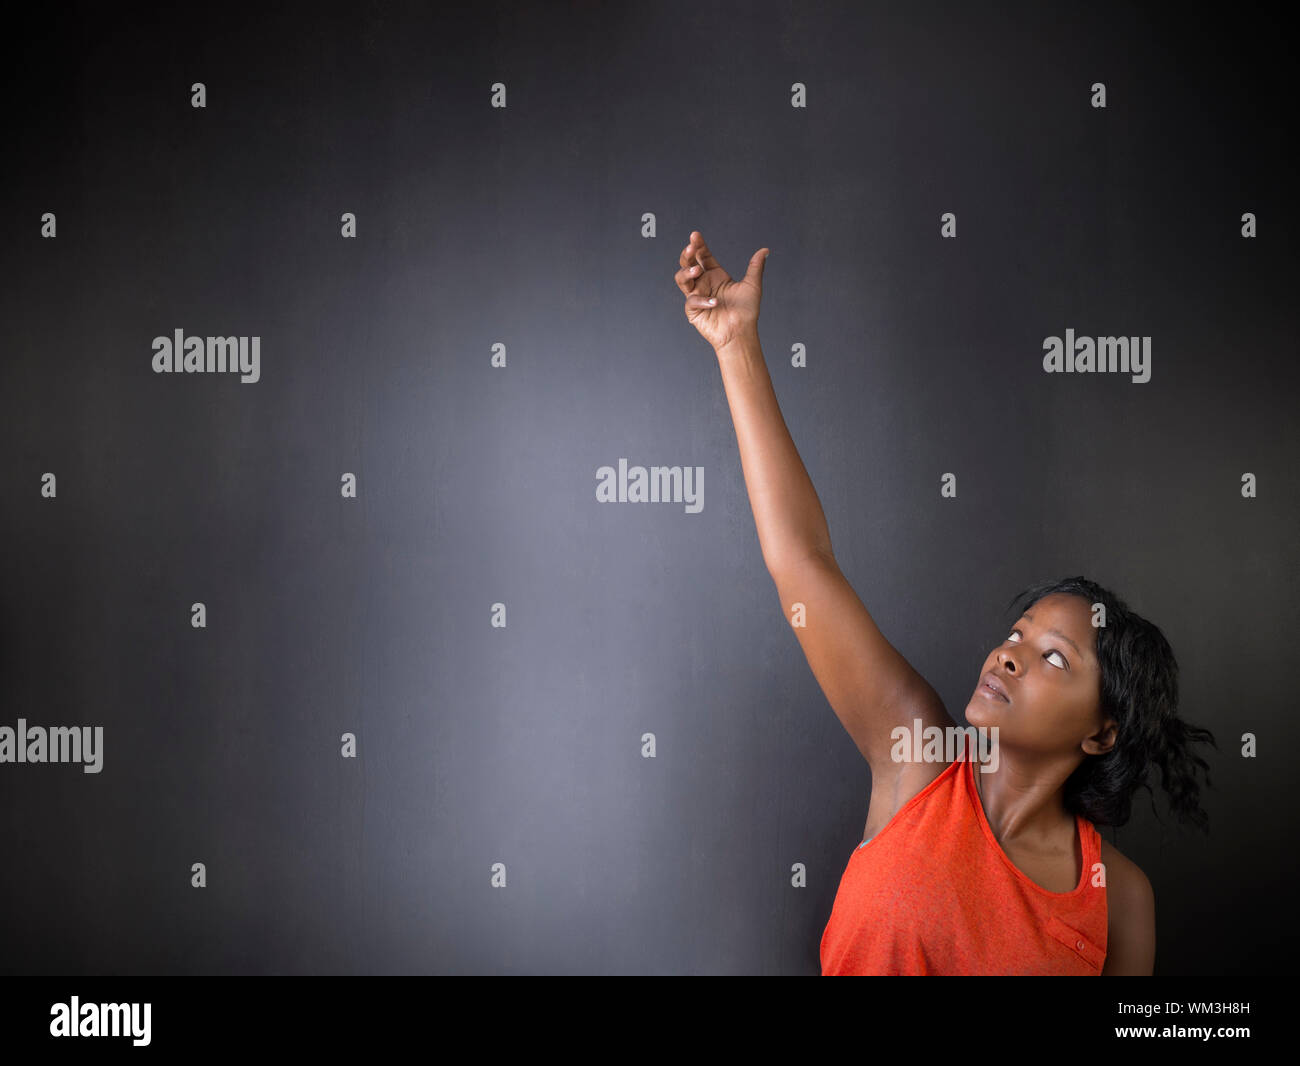 Sud Africano o americano africano insegnante di donna su chalk nero lo sfondo della scheda Foto Stock